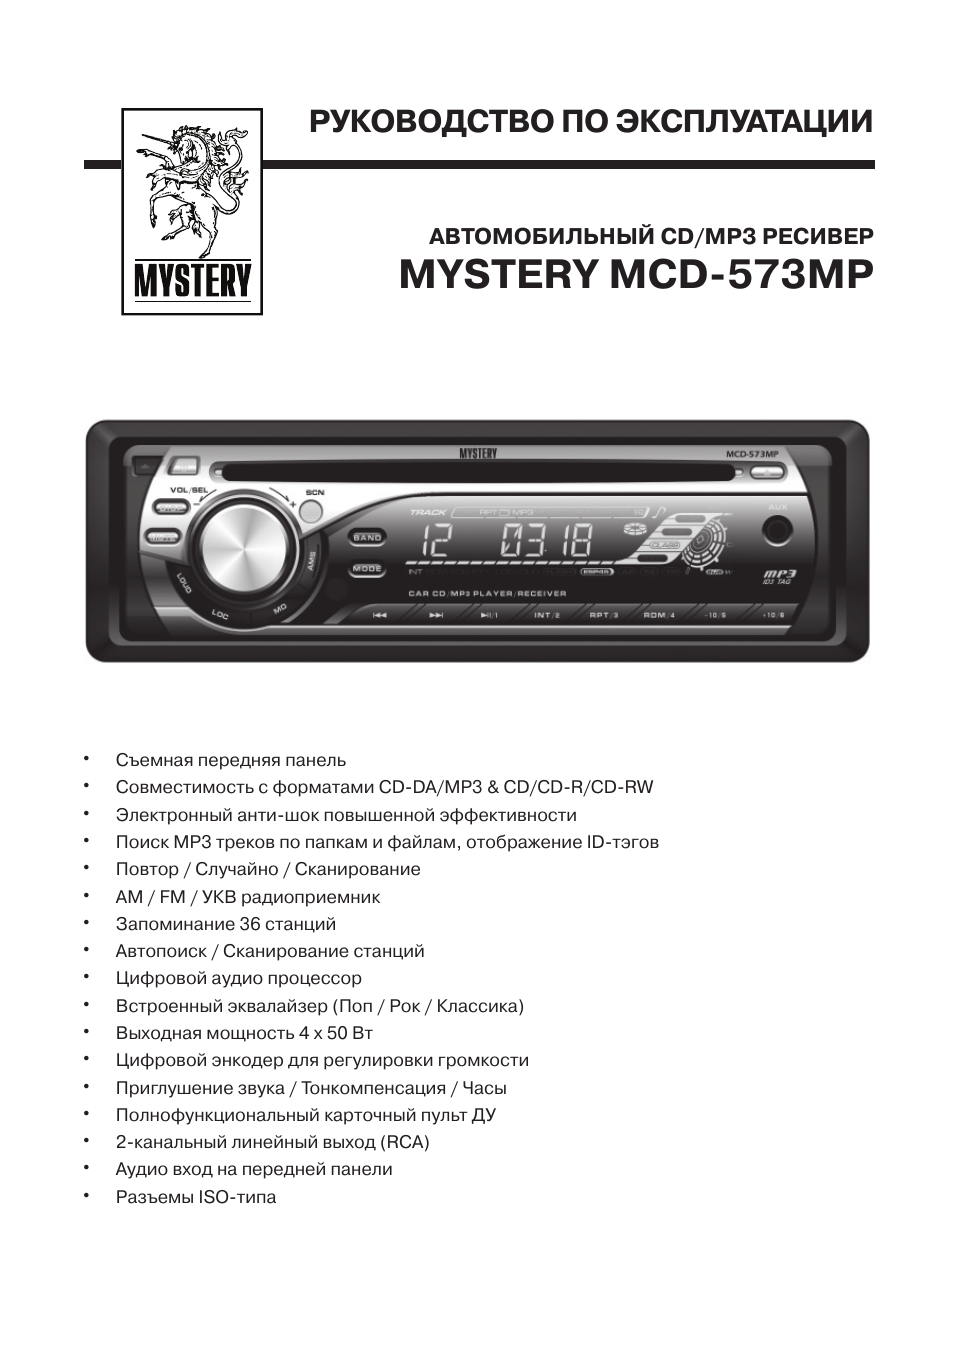 Инструкция для mystery mcd 550mp скачать